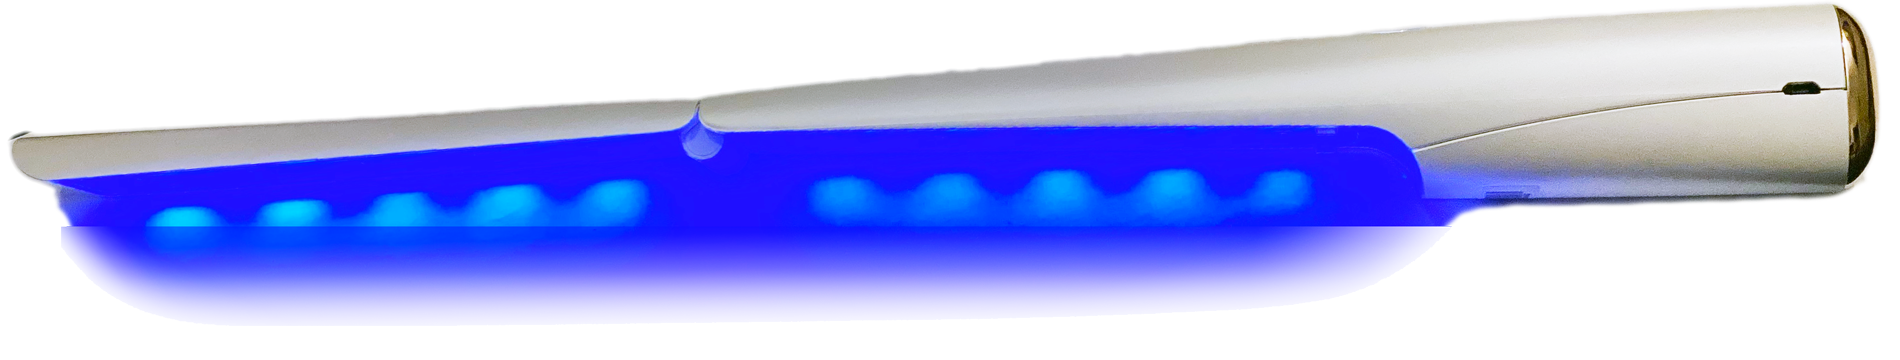 Hand-held UVC LED Light Sanitiser